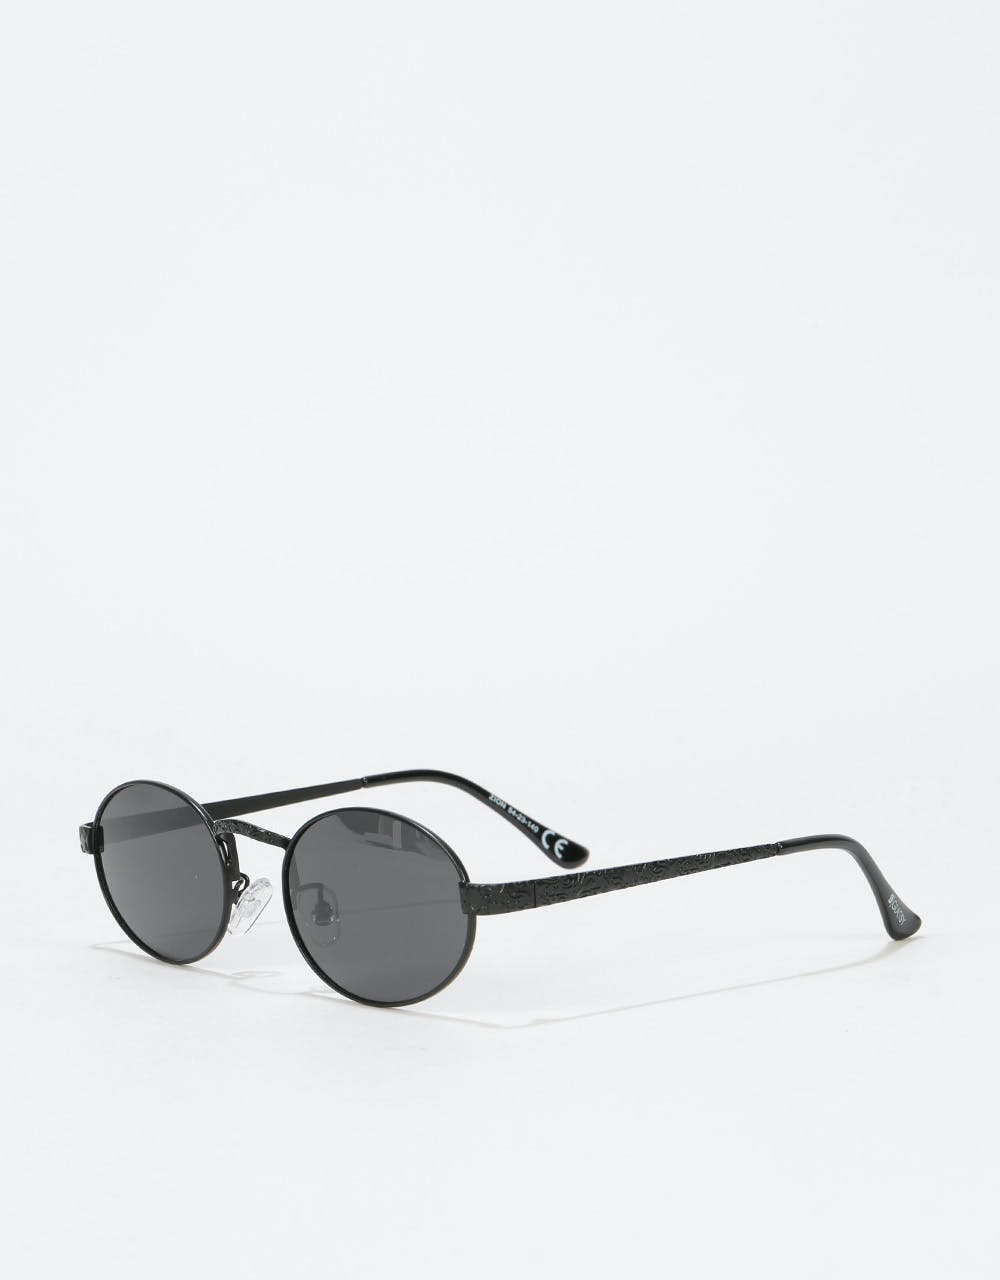 Glassy Sunhater Zion Sunglasses - Black